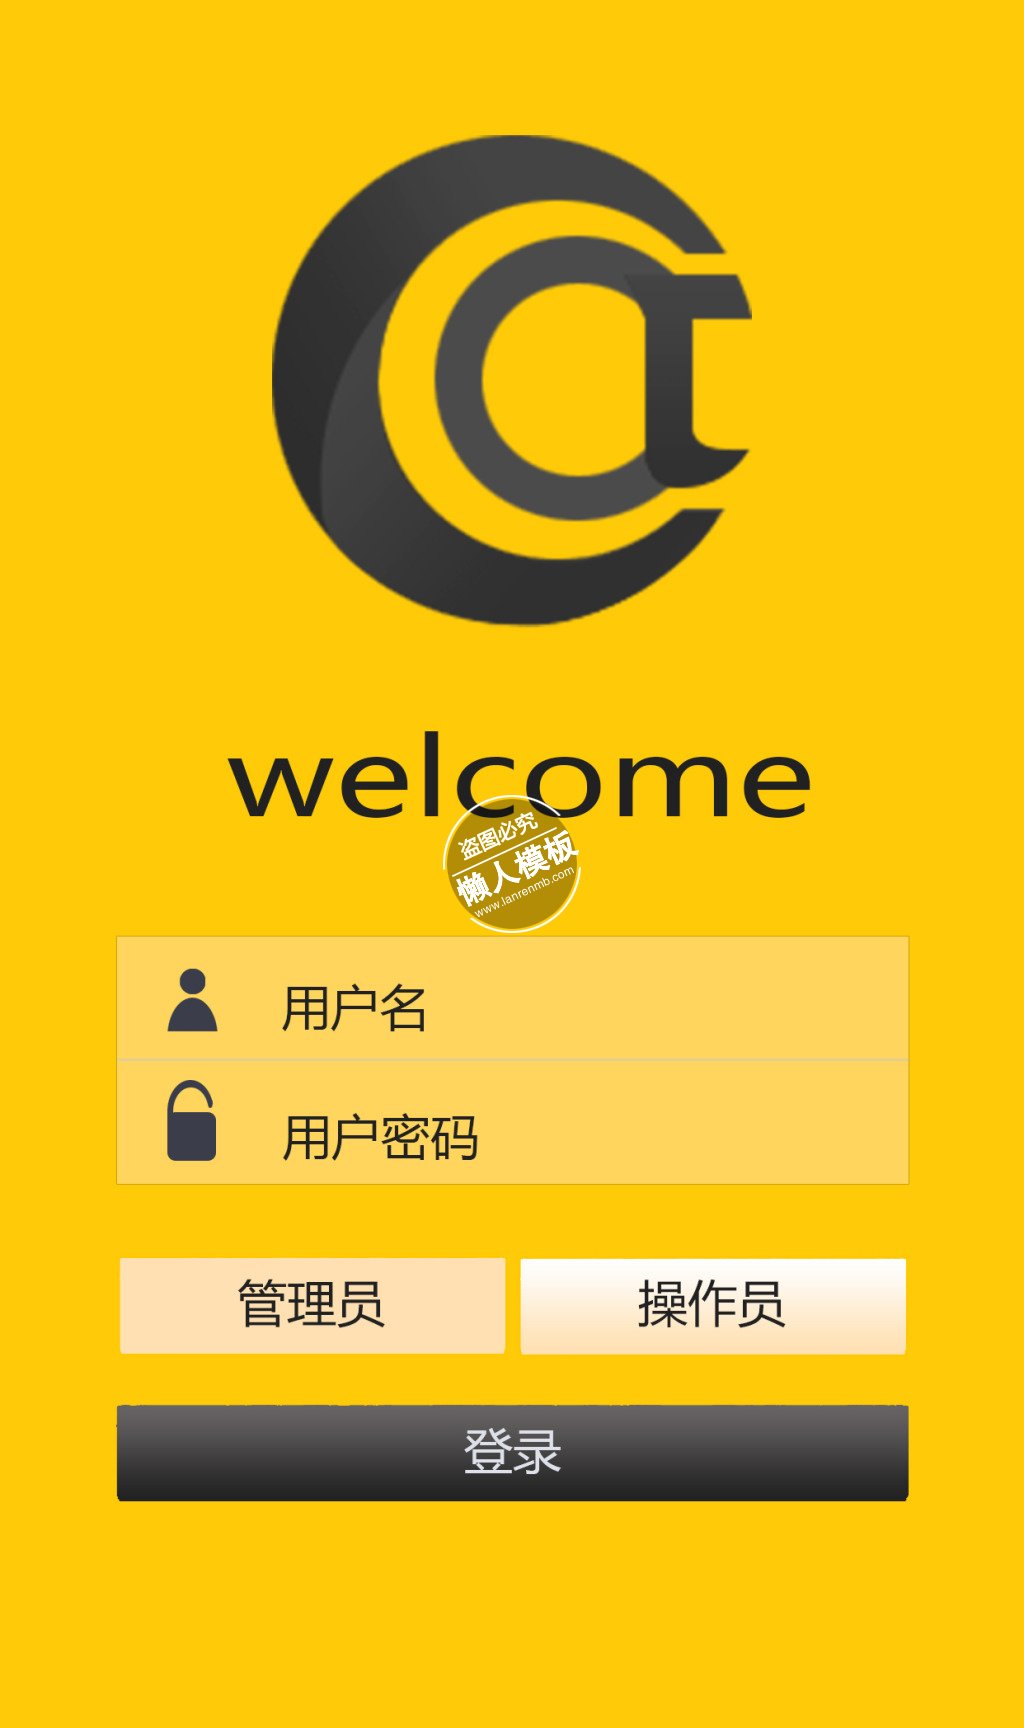 黄色背景包含管理员登录页ui界面设计移动端手机网页psd素材下载